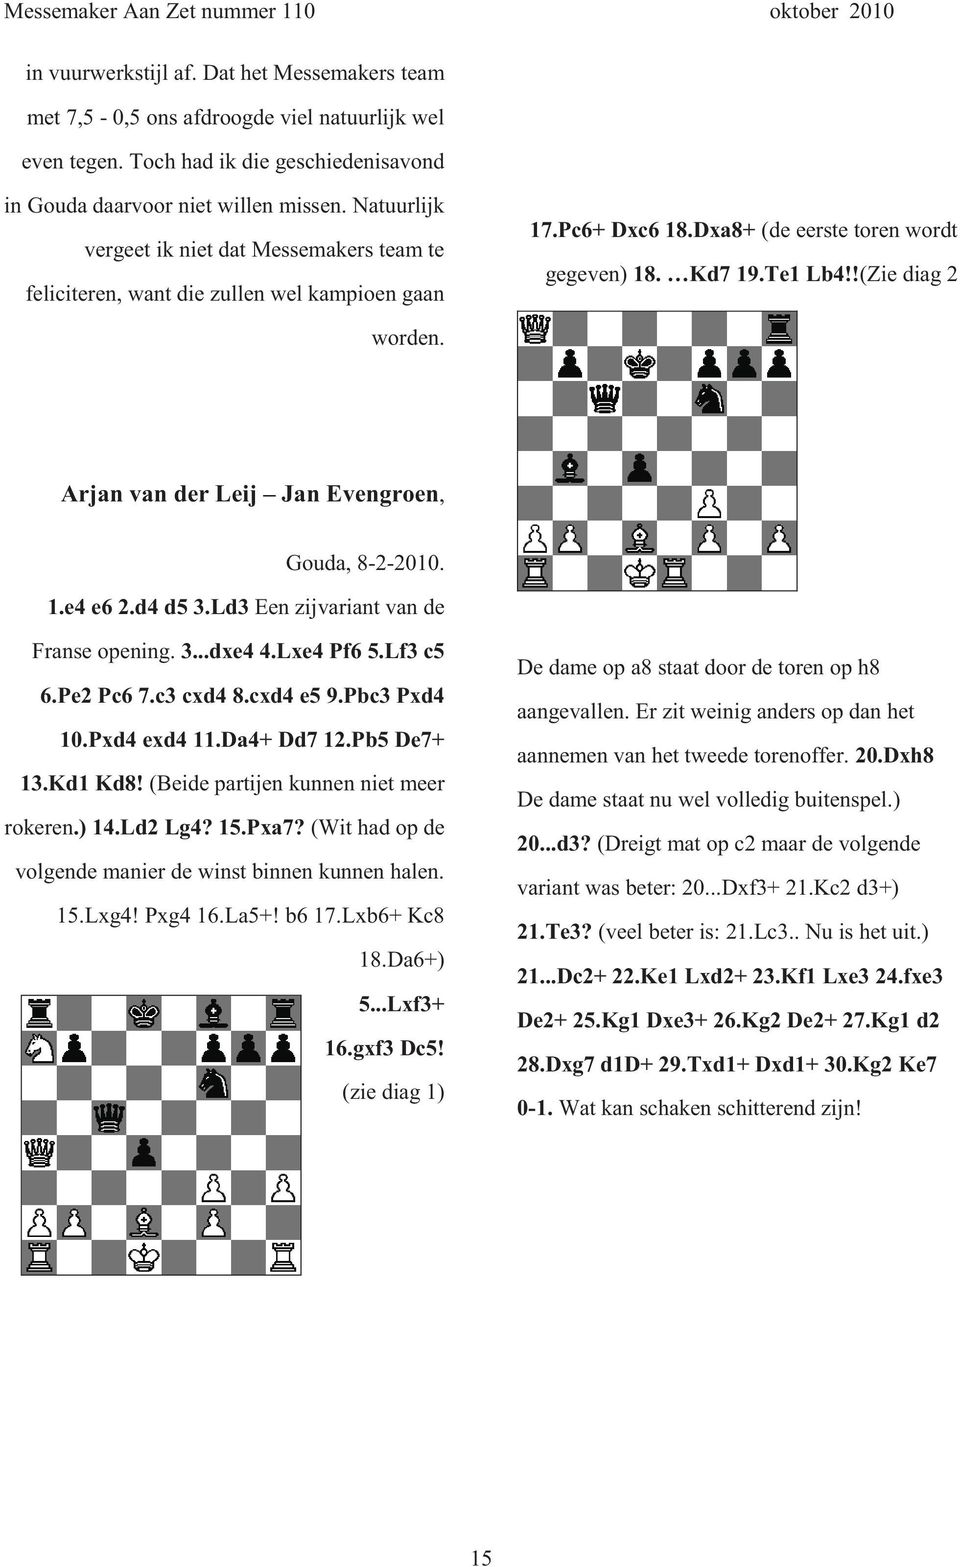 Arjan van der Leij Jan Evengroen, Gouda, 8-2-2010. 1.e4 e6 2.d4 d5 3.Ld3 Een zijvariant van de Franse opening. 3...dxe4 4.Lxe4 Pf6 5.Lf3 c5 6.Pe2 Pc6 7.c3 cxd4 8.cxd4 e5 9.Pbc3 Pxd4 10.Pxd4 exd4 11.